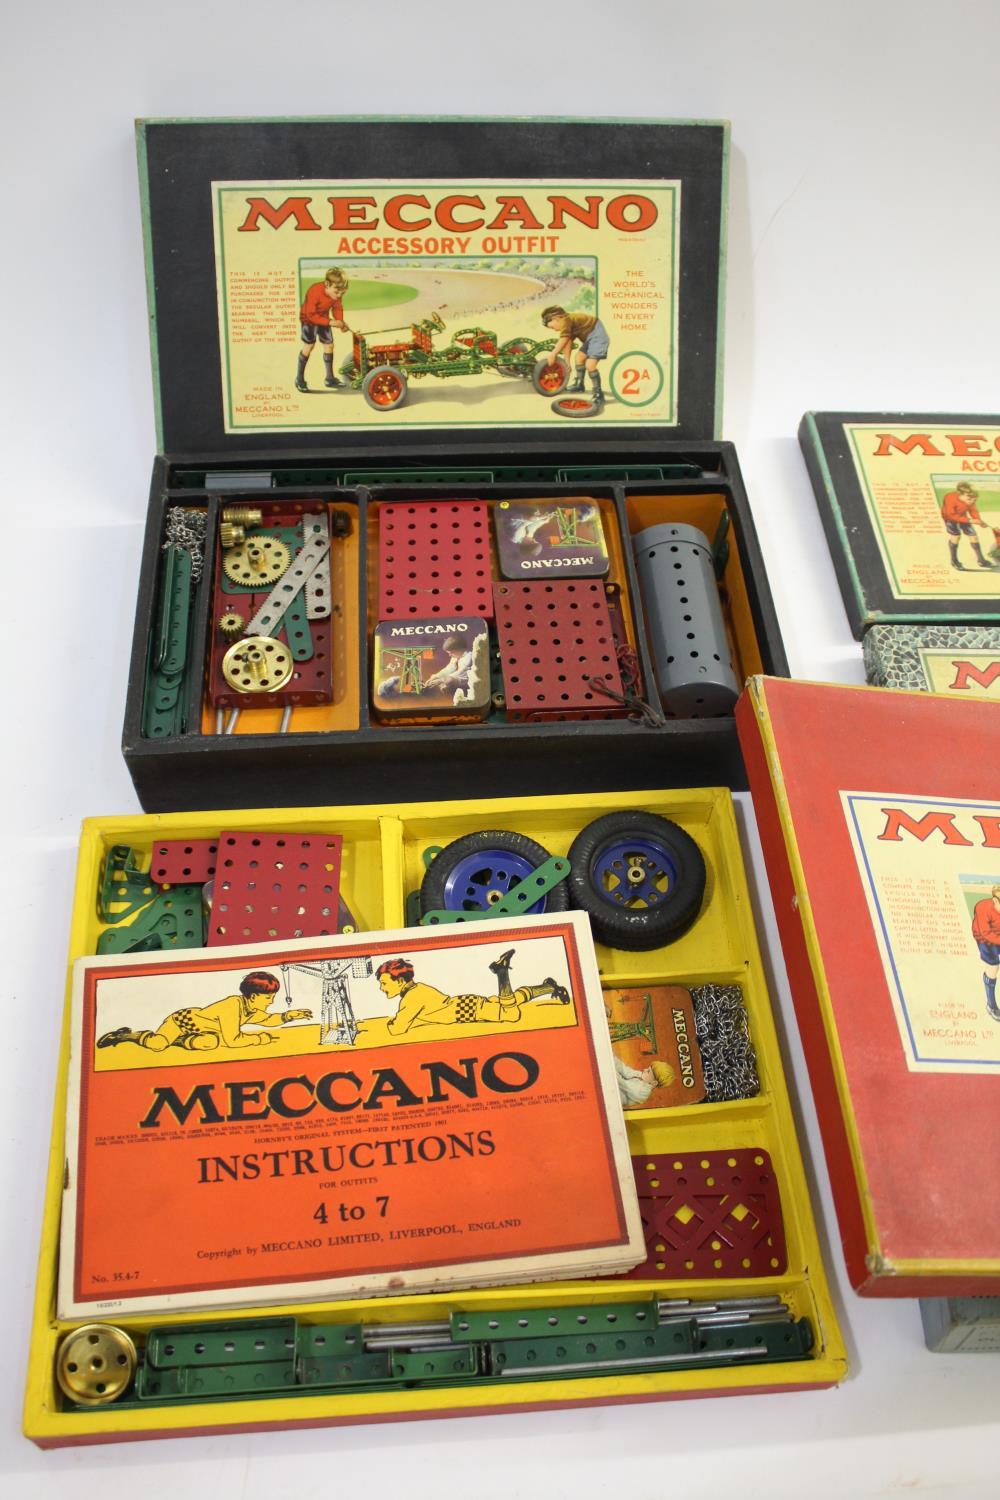 MECCANO BOXED SETS including Meccano Accessory Outfit 2A, Meccano Accessory Outfit 1A, Accessory - Image 2 of 3